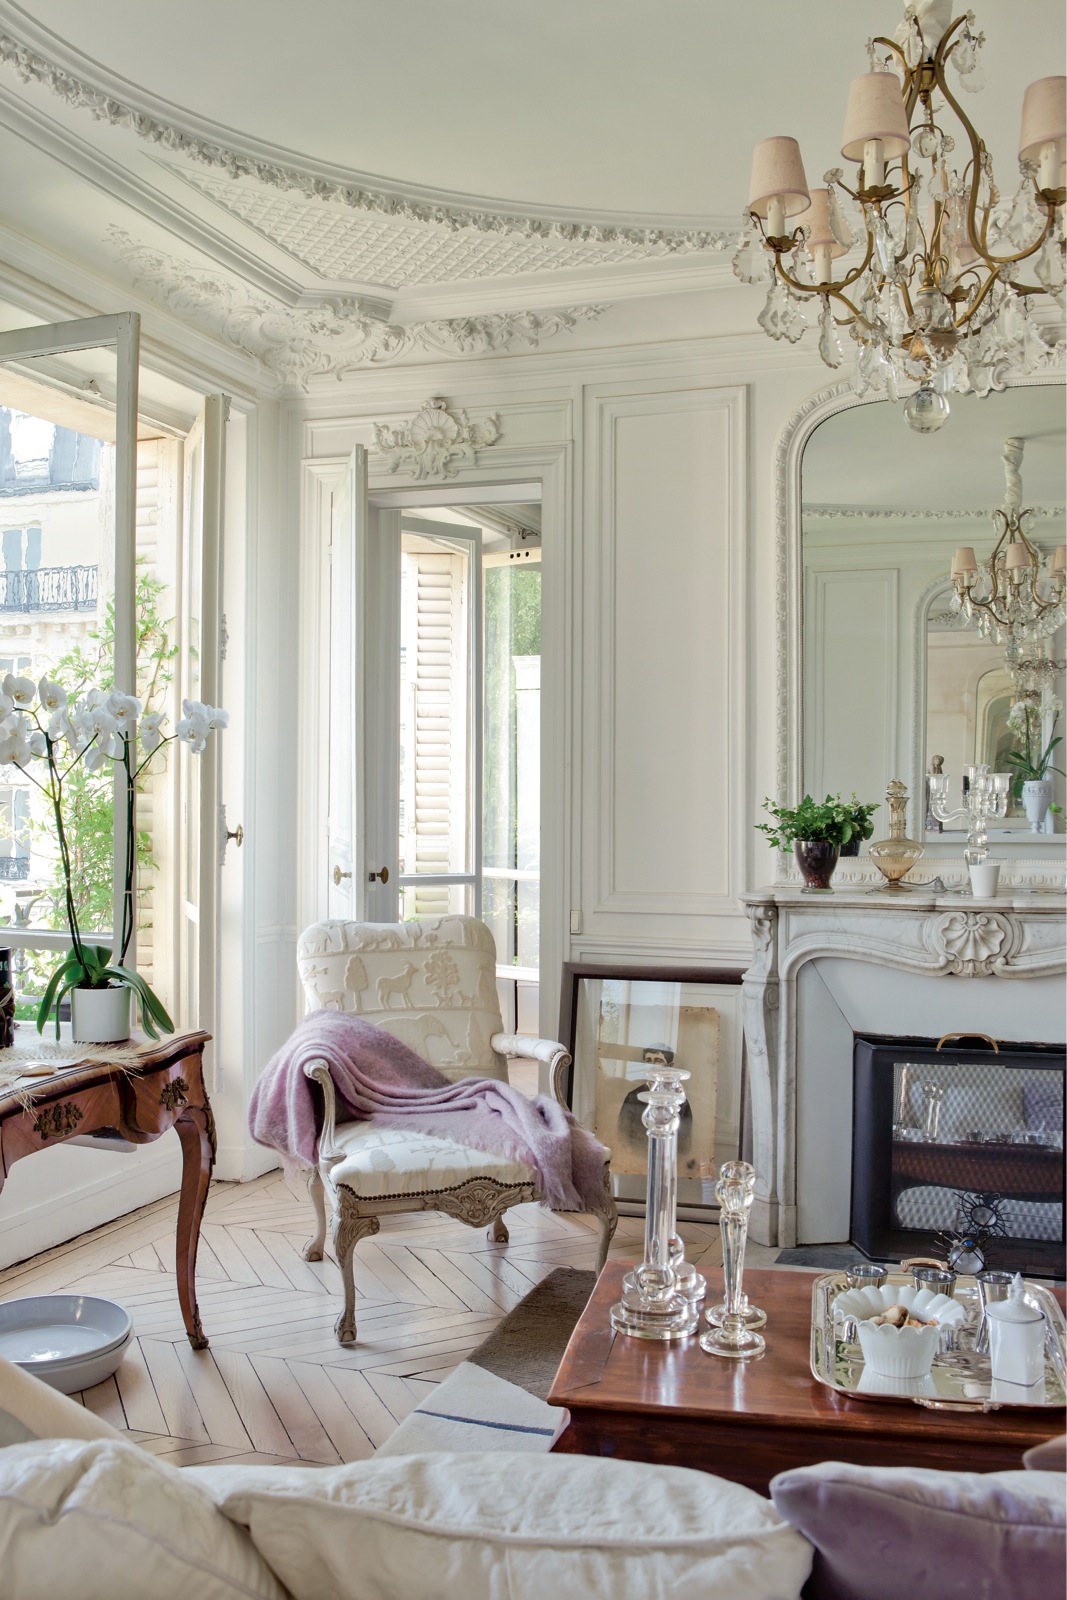 Французские квартиры: красивые фото и визуализации дизайна интерьеров в разных стилях